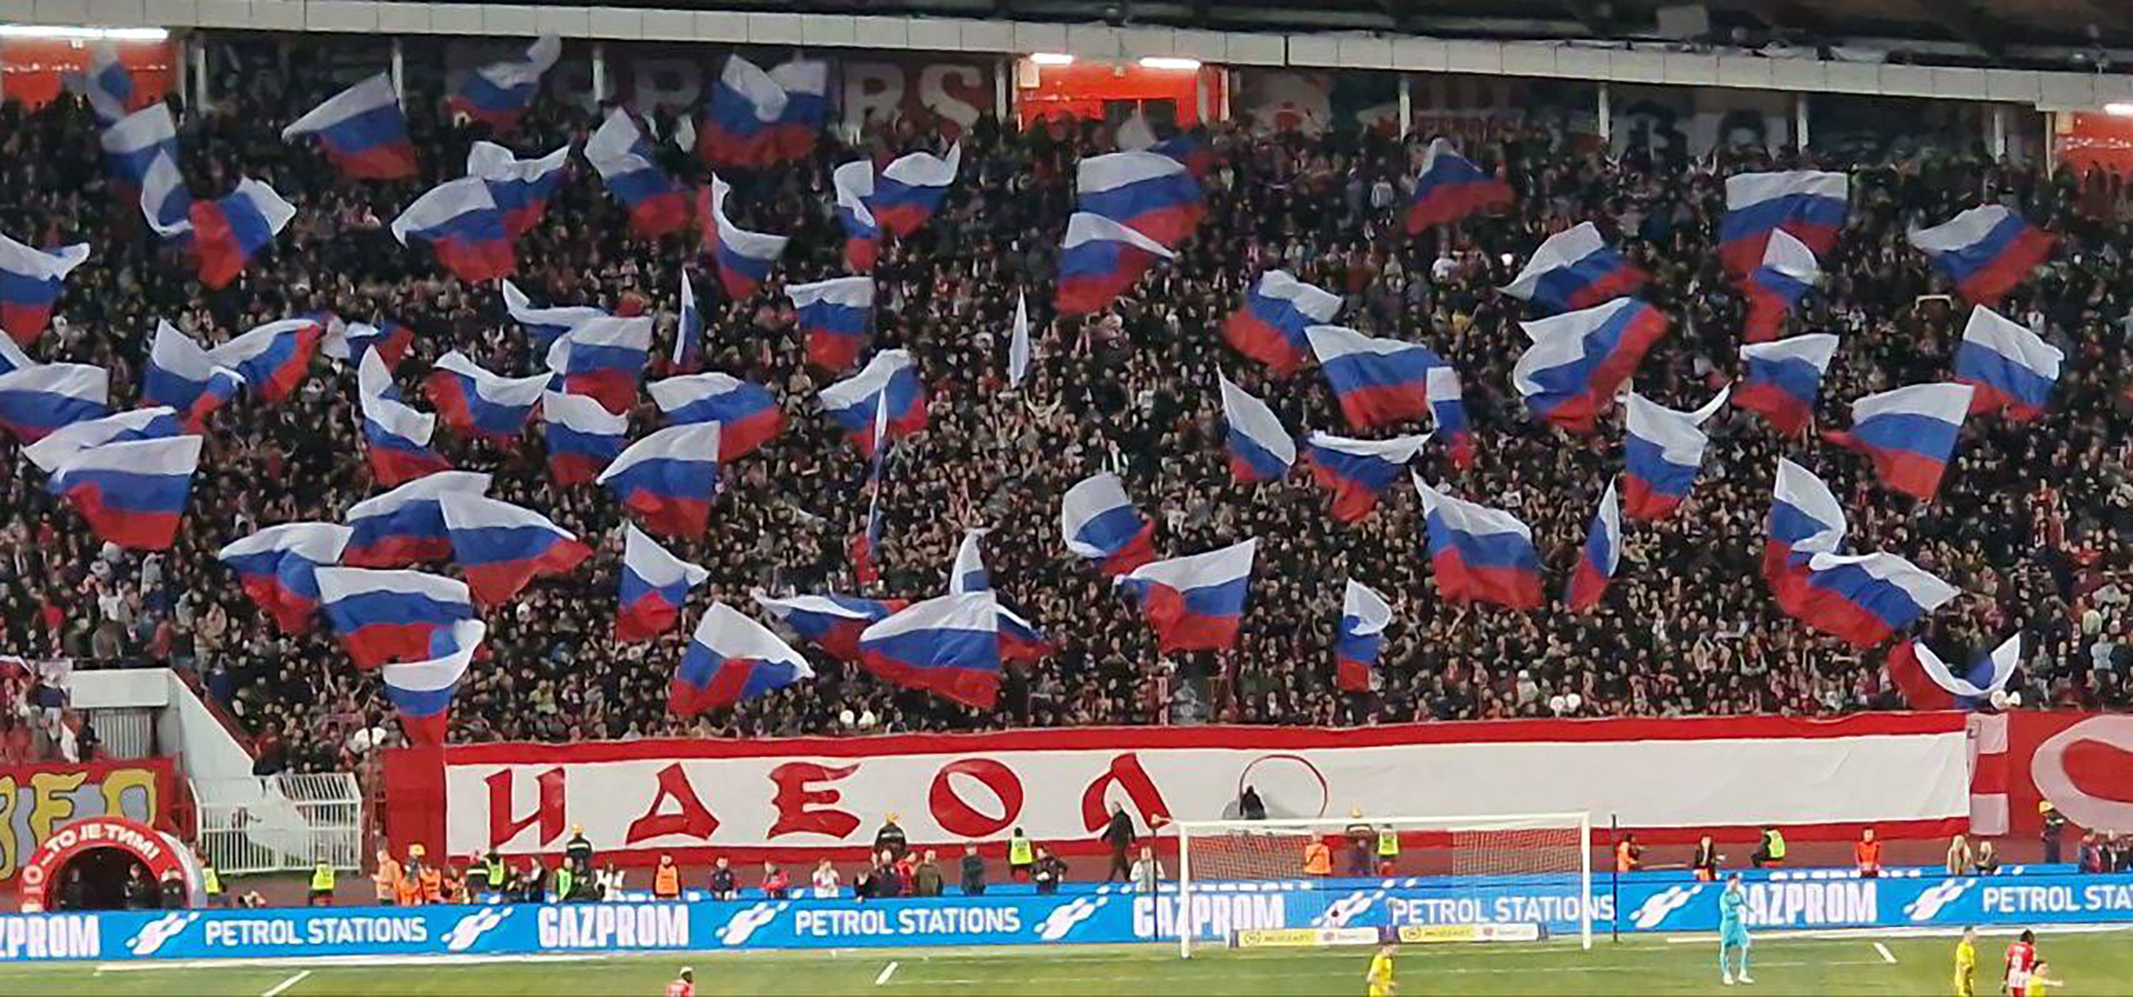 Srpski ili ruski stadioni? Priča o fudbalu, politici i organizovanom kriminalu u Srbiji – Lubomir Filipovič